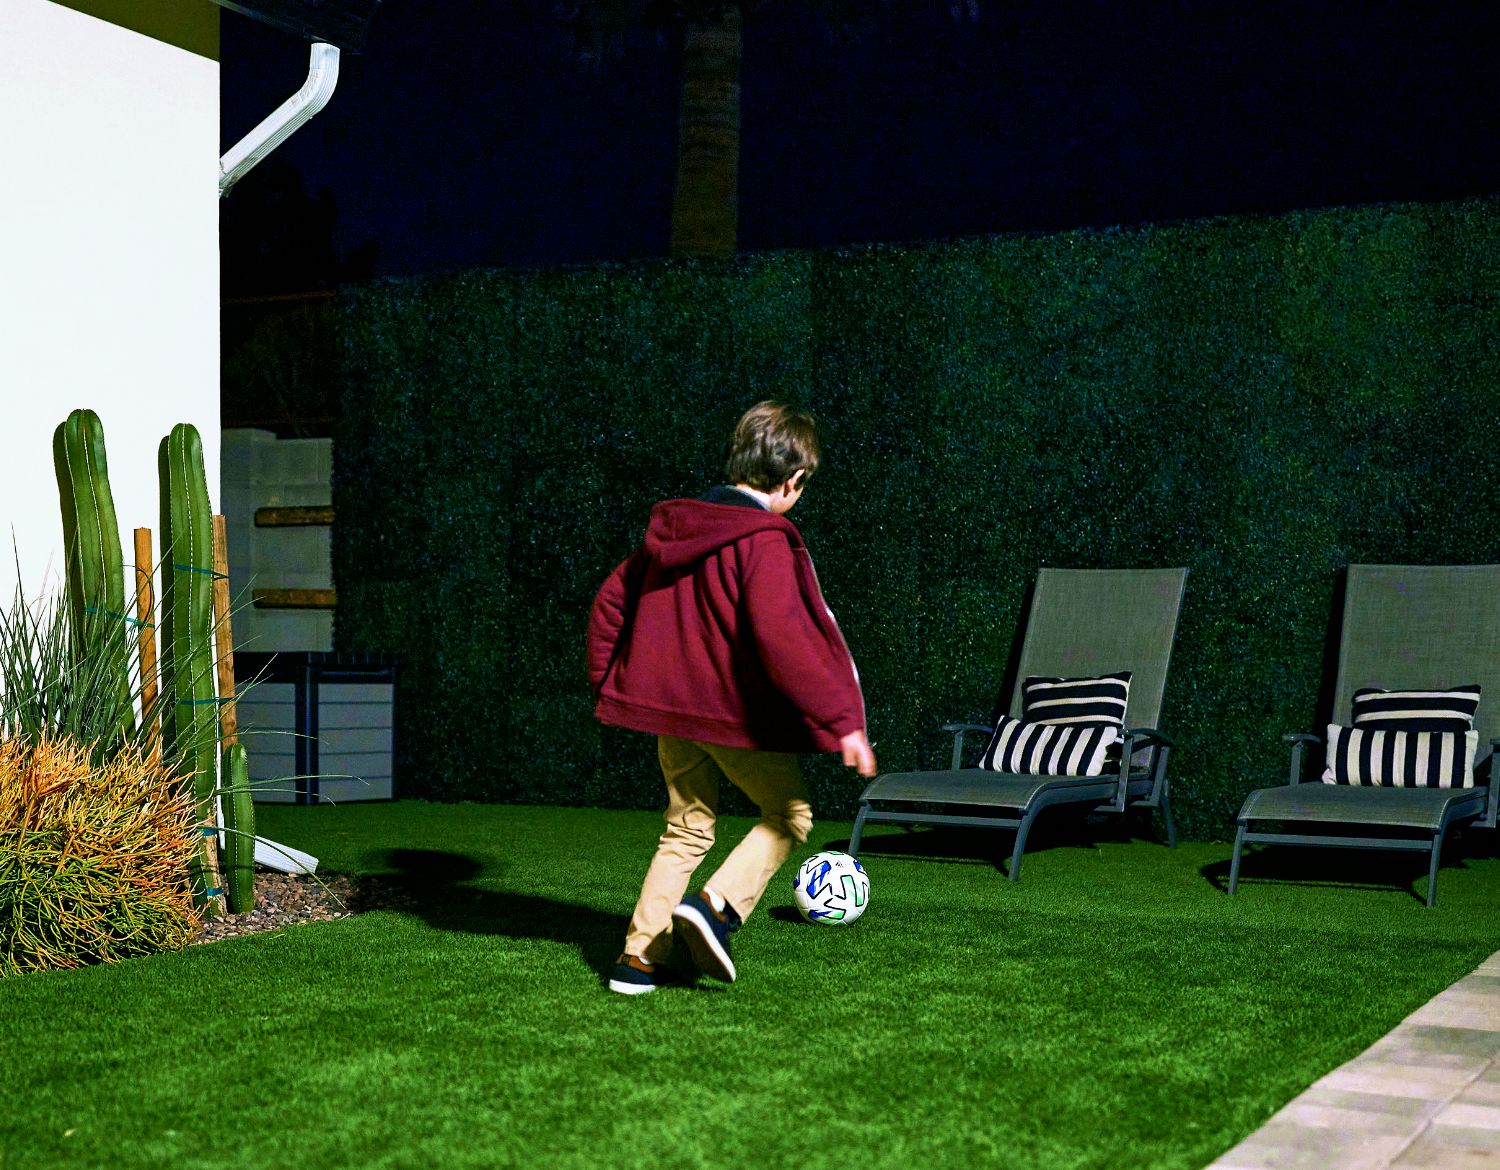 Ein Bild zeigt einen Jungen, der nachts im Garten Fußball spielt, von einer Arlo Ultra 2 -Überwachungskamera gefangen genommen